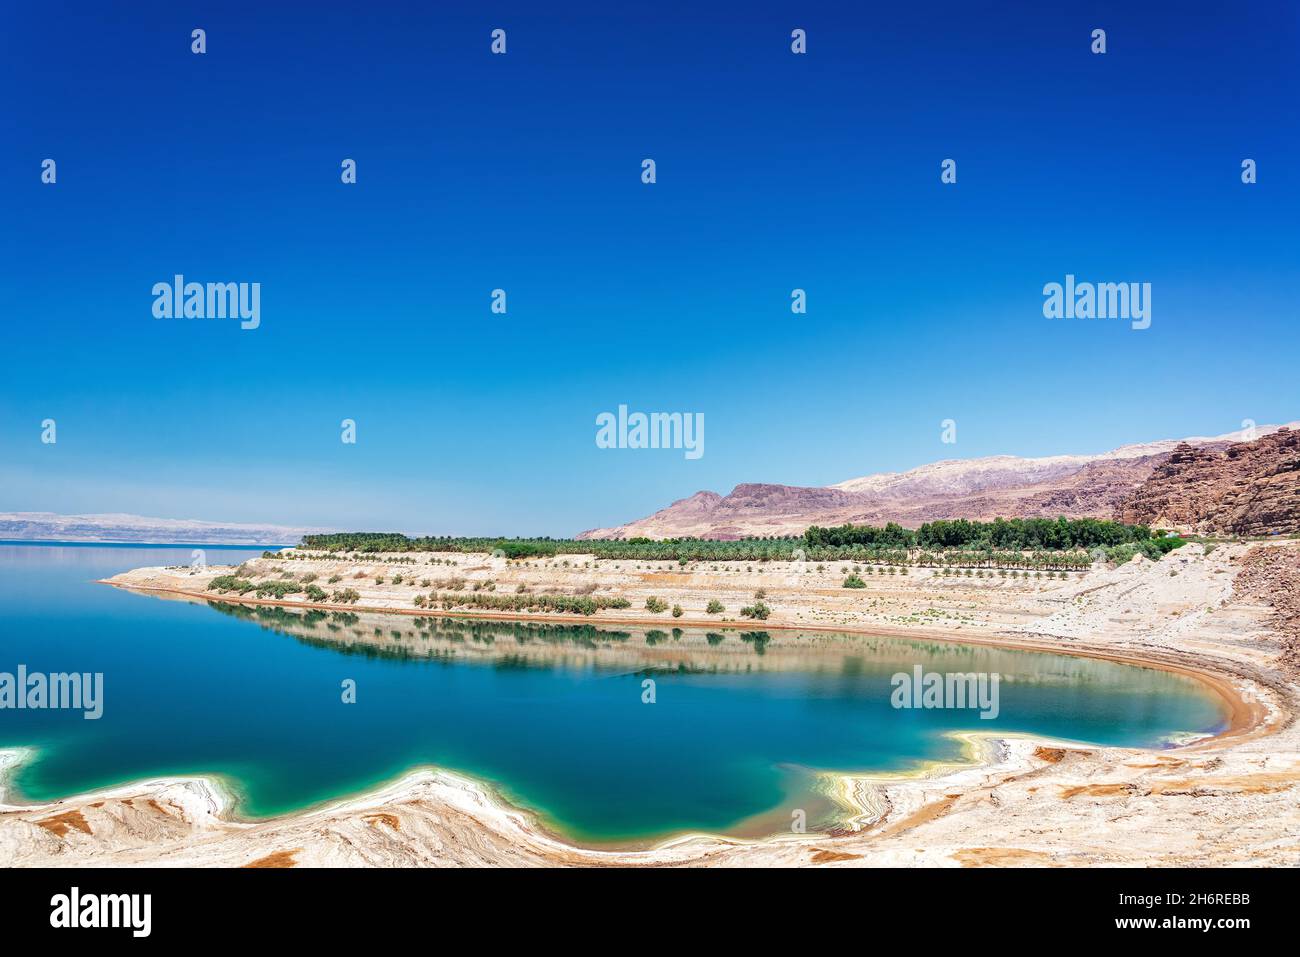 Vea agua salada y turquesa en el Mar Muerto en Jordania Foto de stock